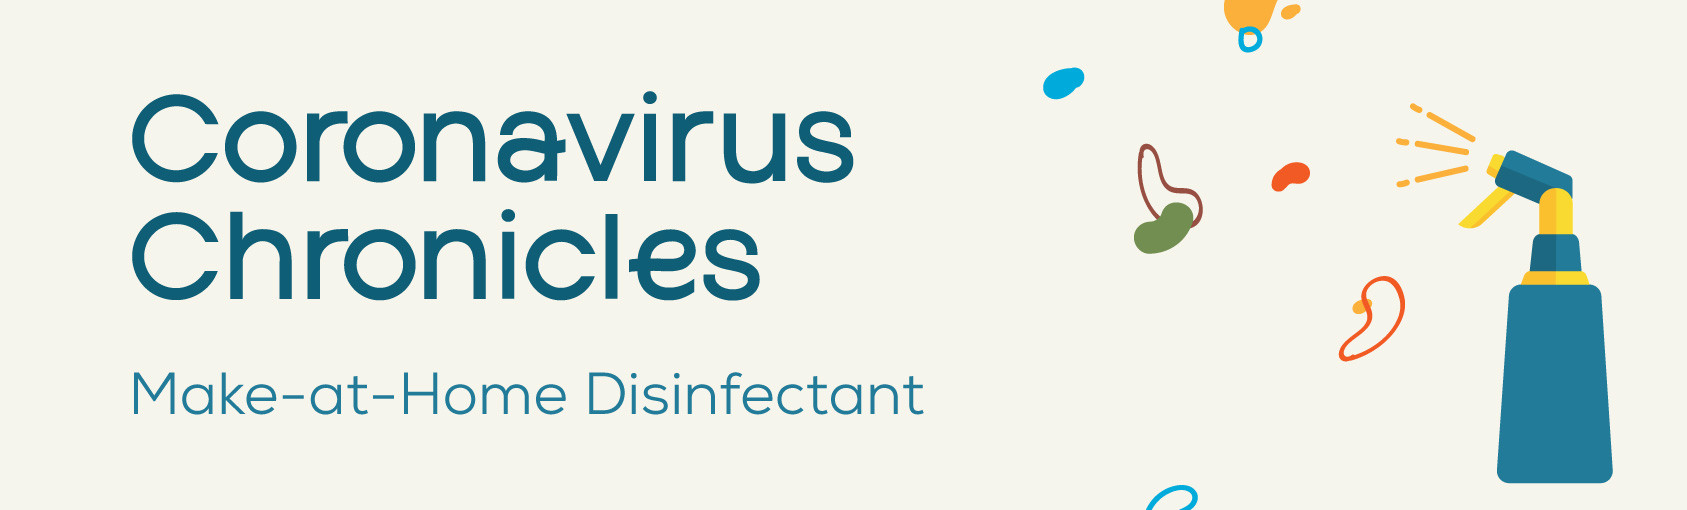 Coronavirus Chronicles: Make-at-Home Disinfectant banner